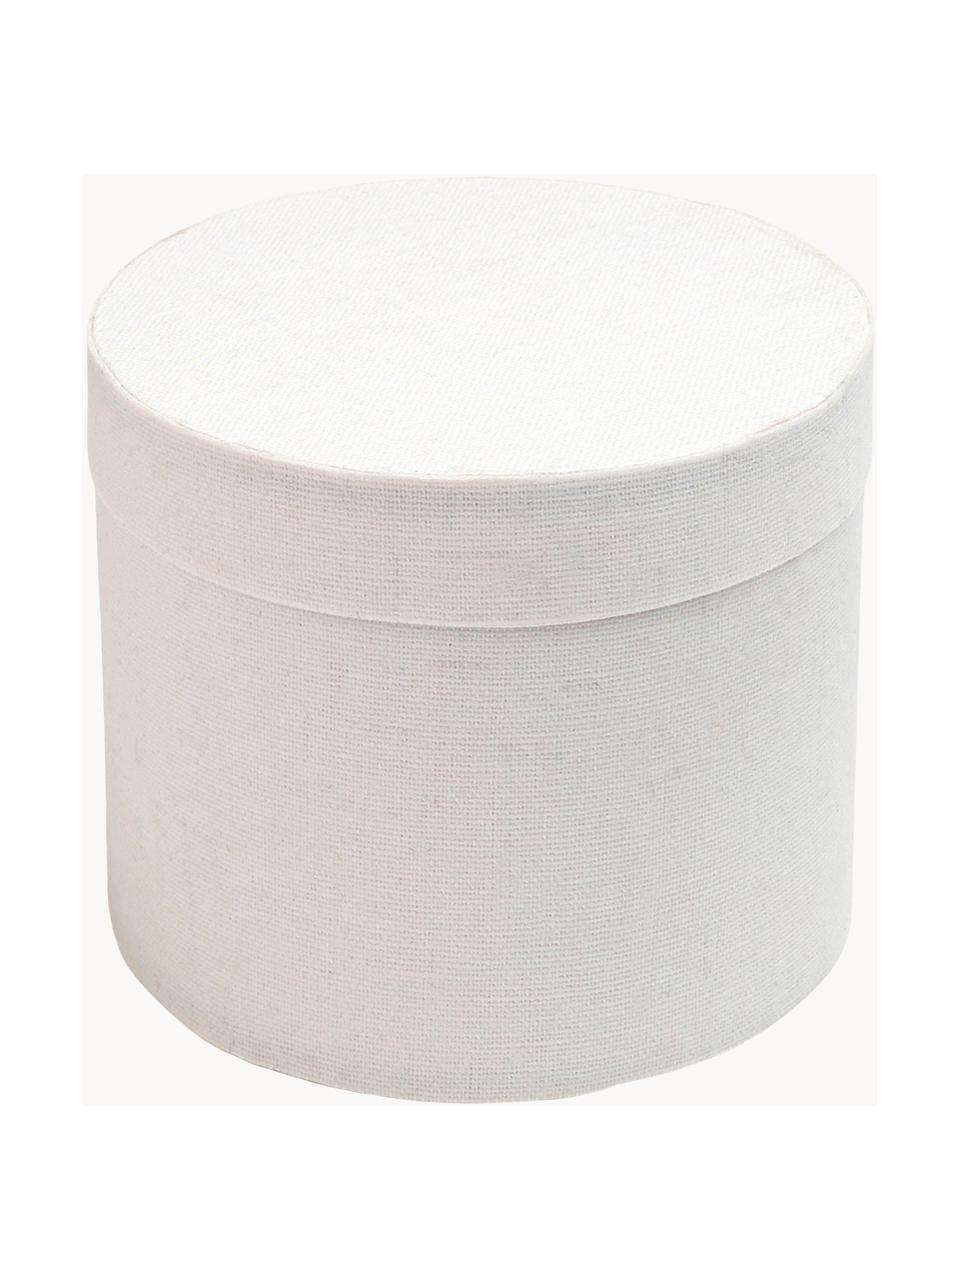 Dárkové krabičky Round, 6 ks, Bavlna, Bílá, Ø 5 cm